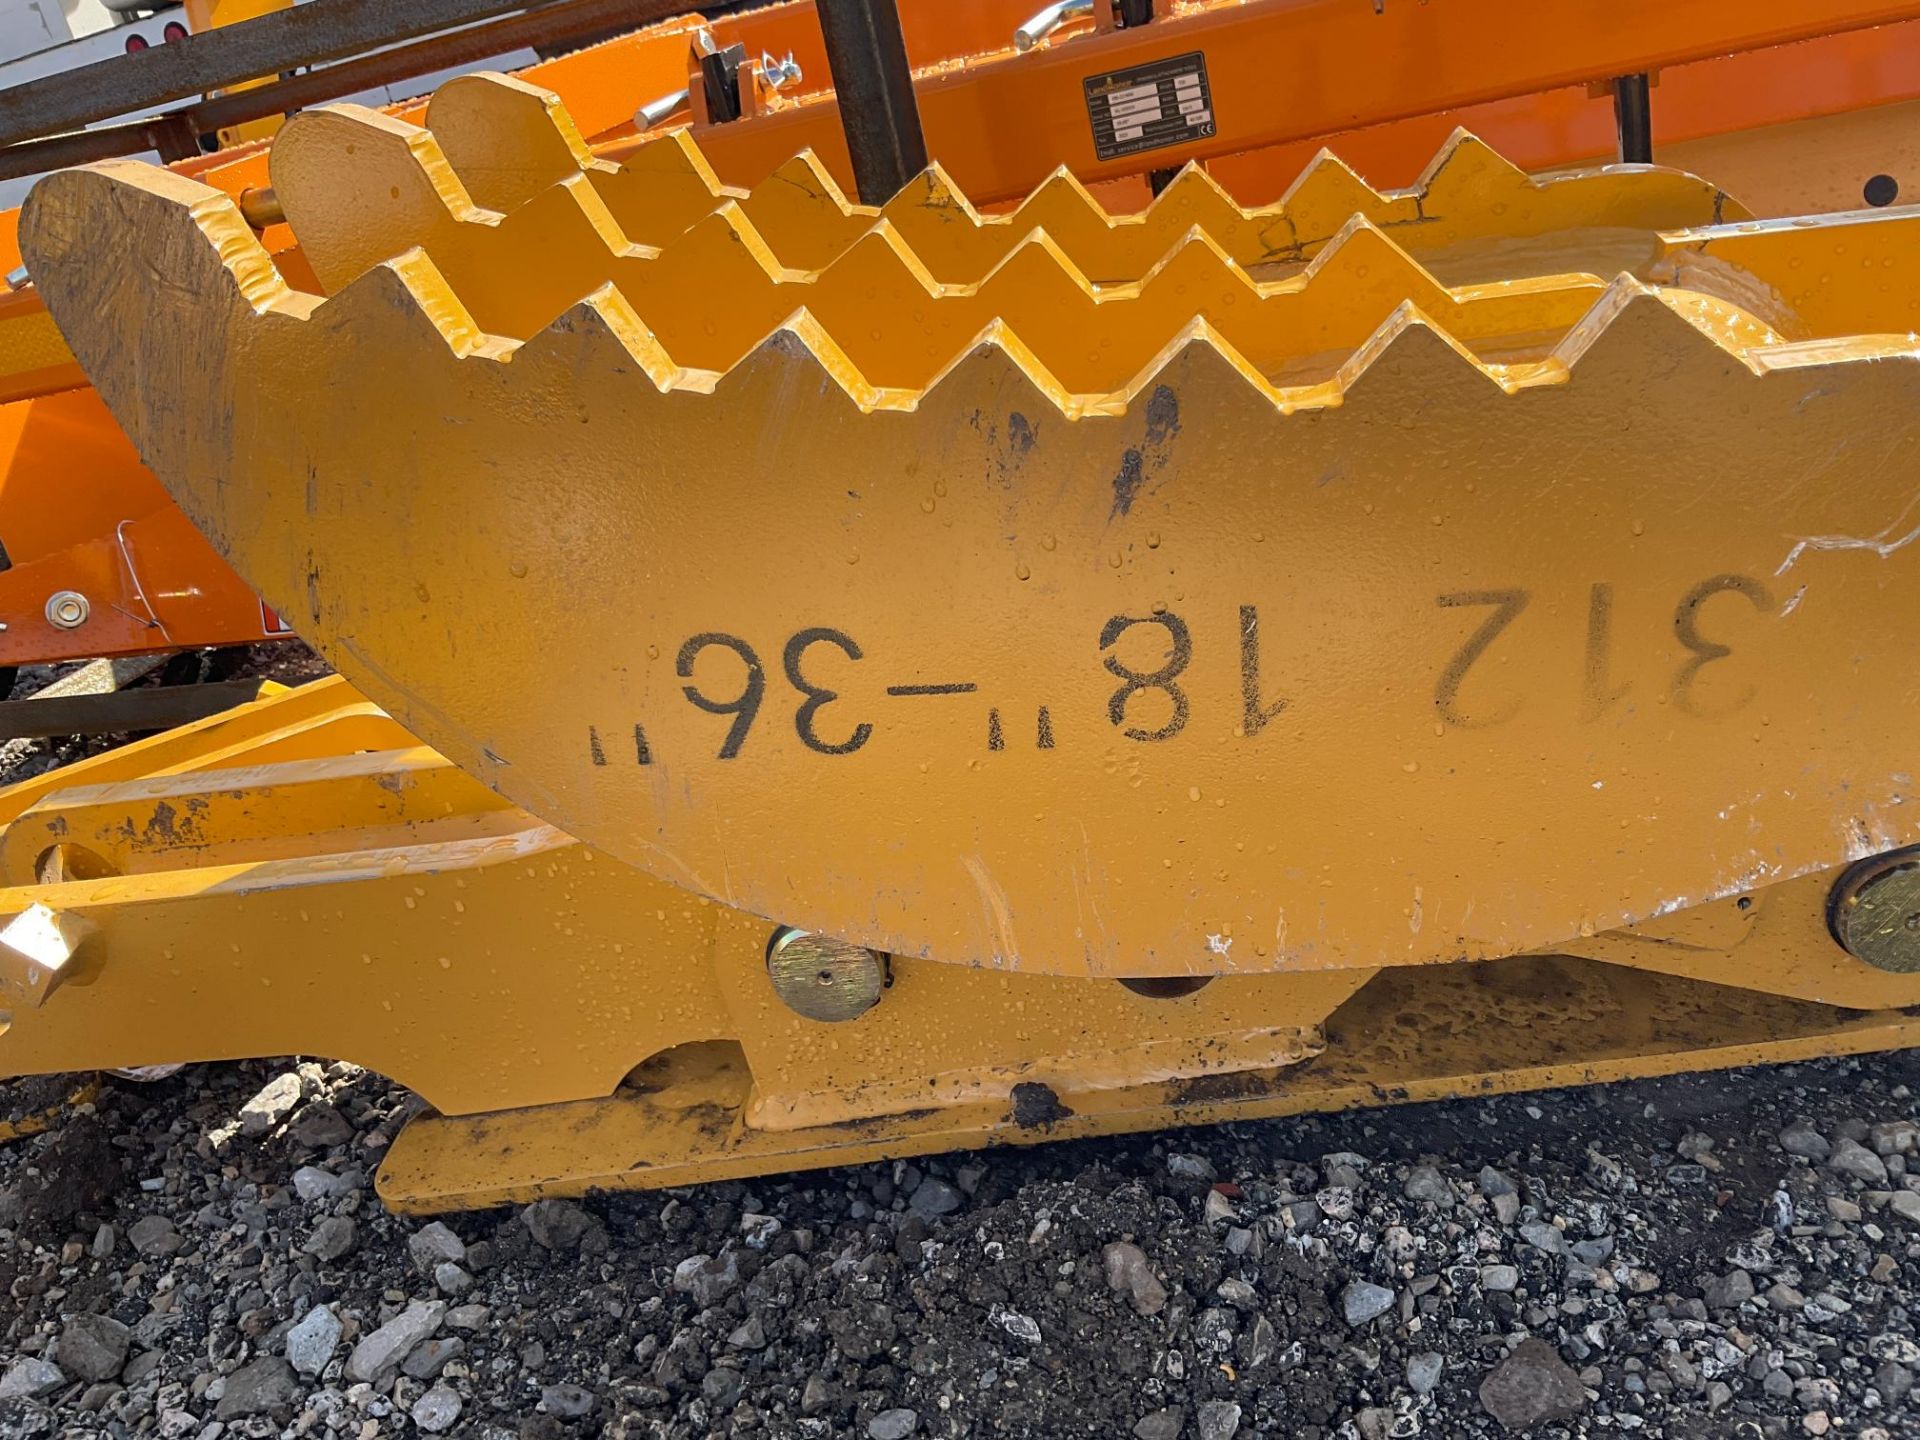 Landhero C312 Excavator Thumb - Image 3 of 4